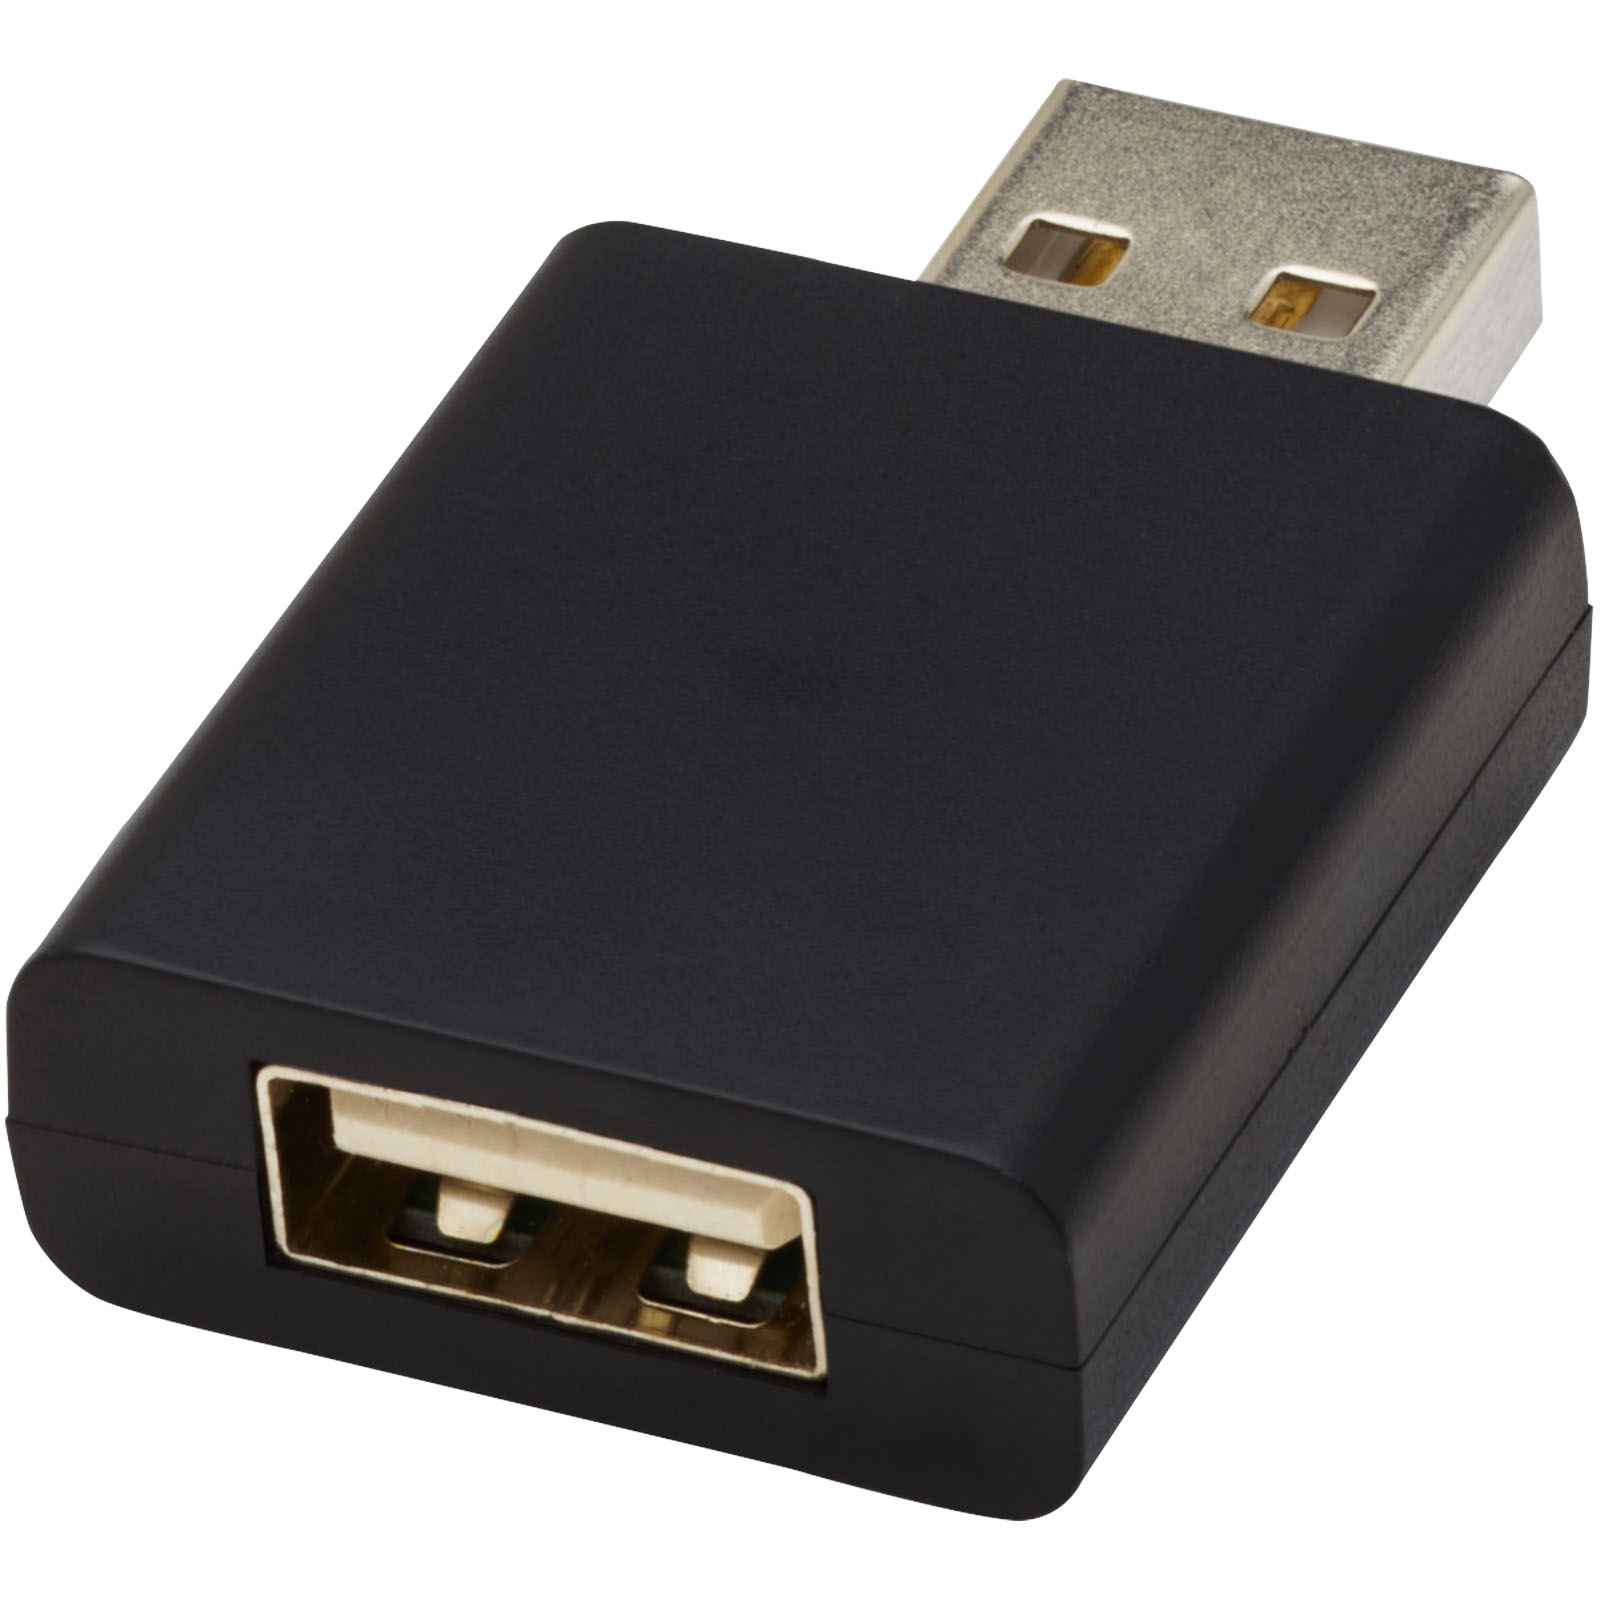 Advertising Computer Accessories - Incognito USB data blocker - 3